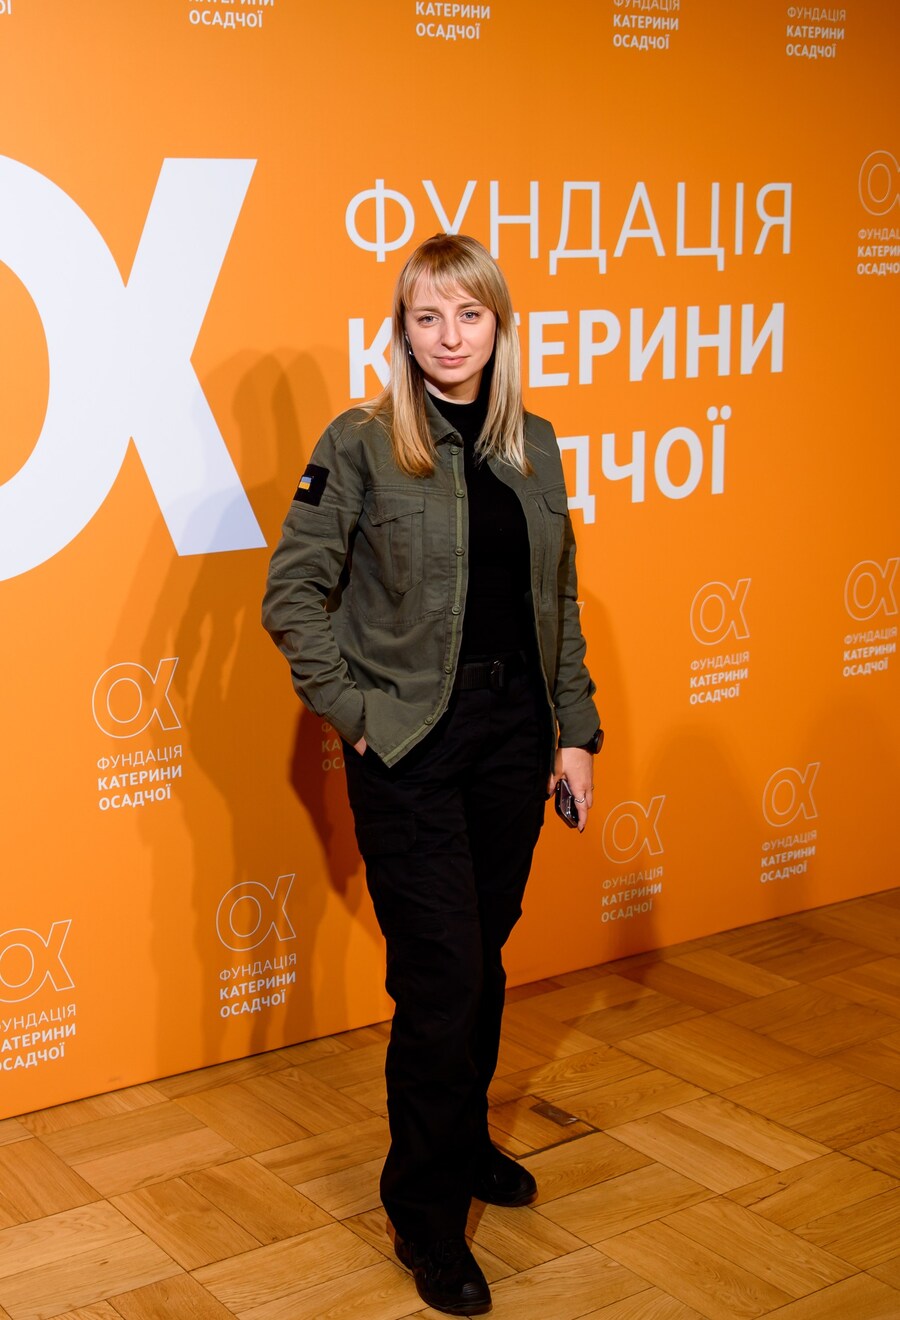 Катя Сільченко, Тімур Мірошниченко та інші відомі українці на презентації фонду Каті Осадчої